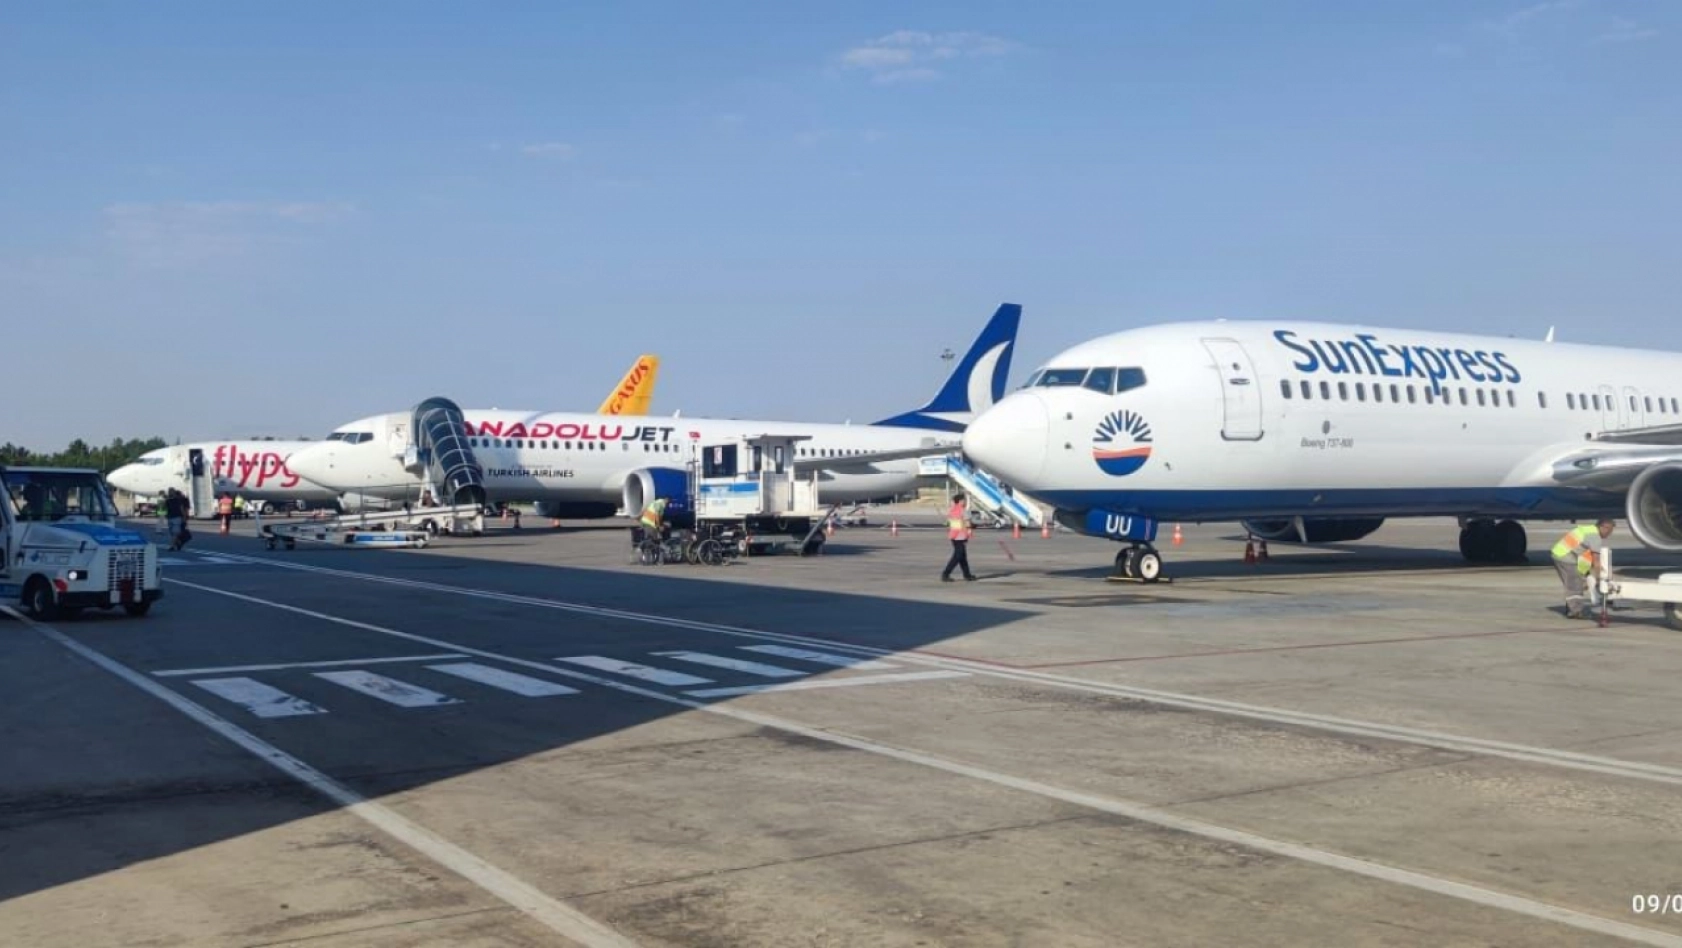 Ağustos'ta Malatya Havalimanı'nda 68 bin 205 yolcuya hizmet verildi